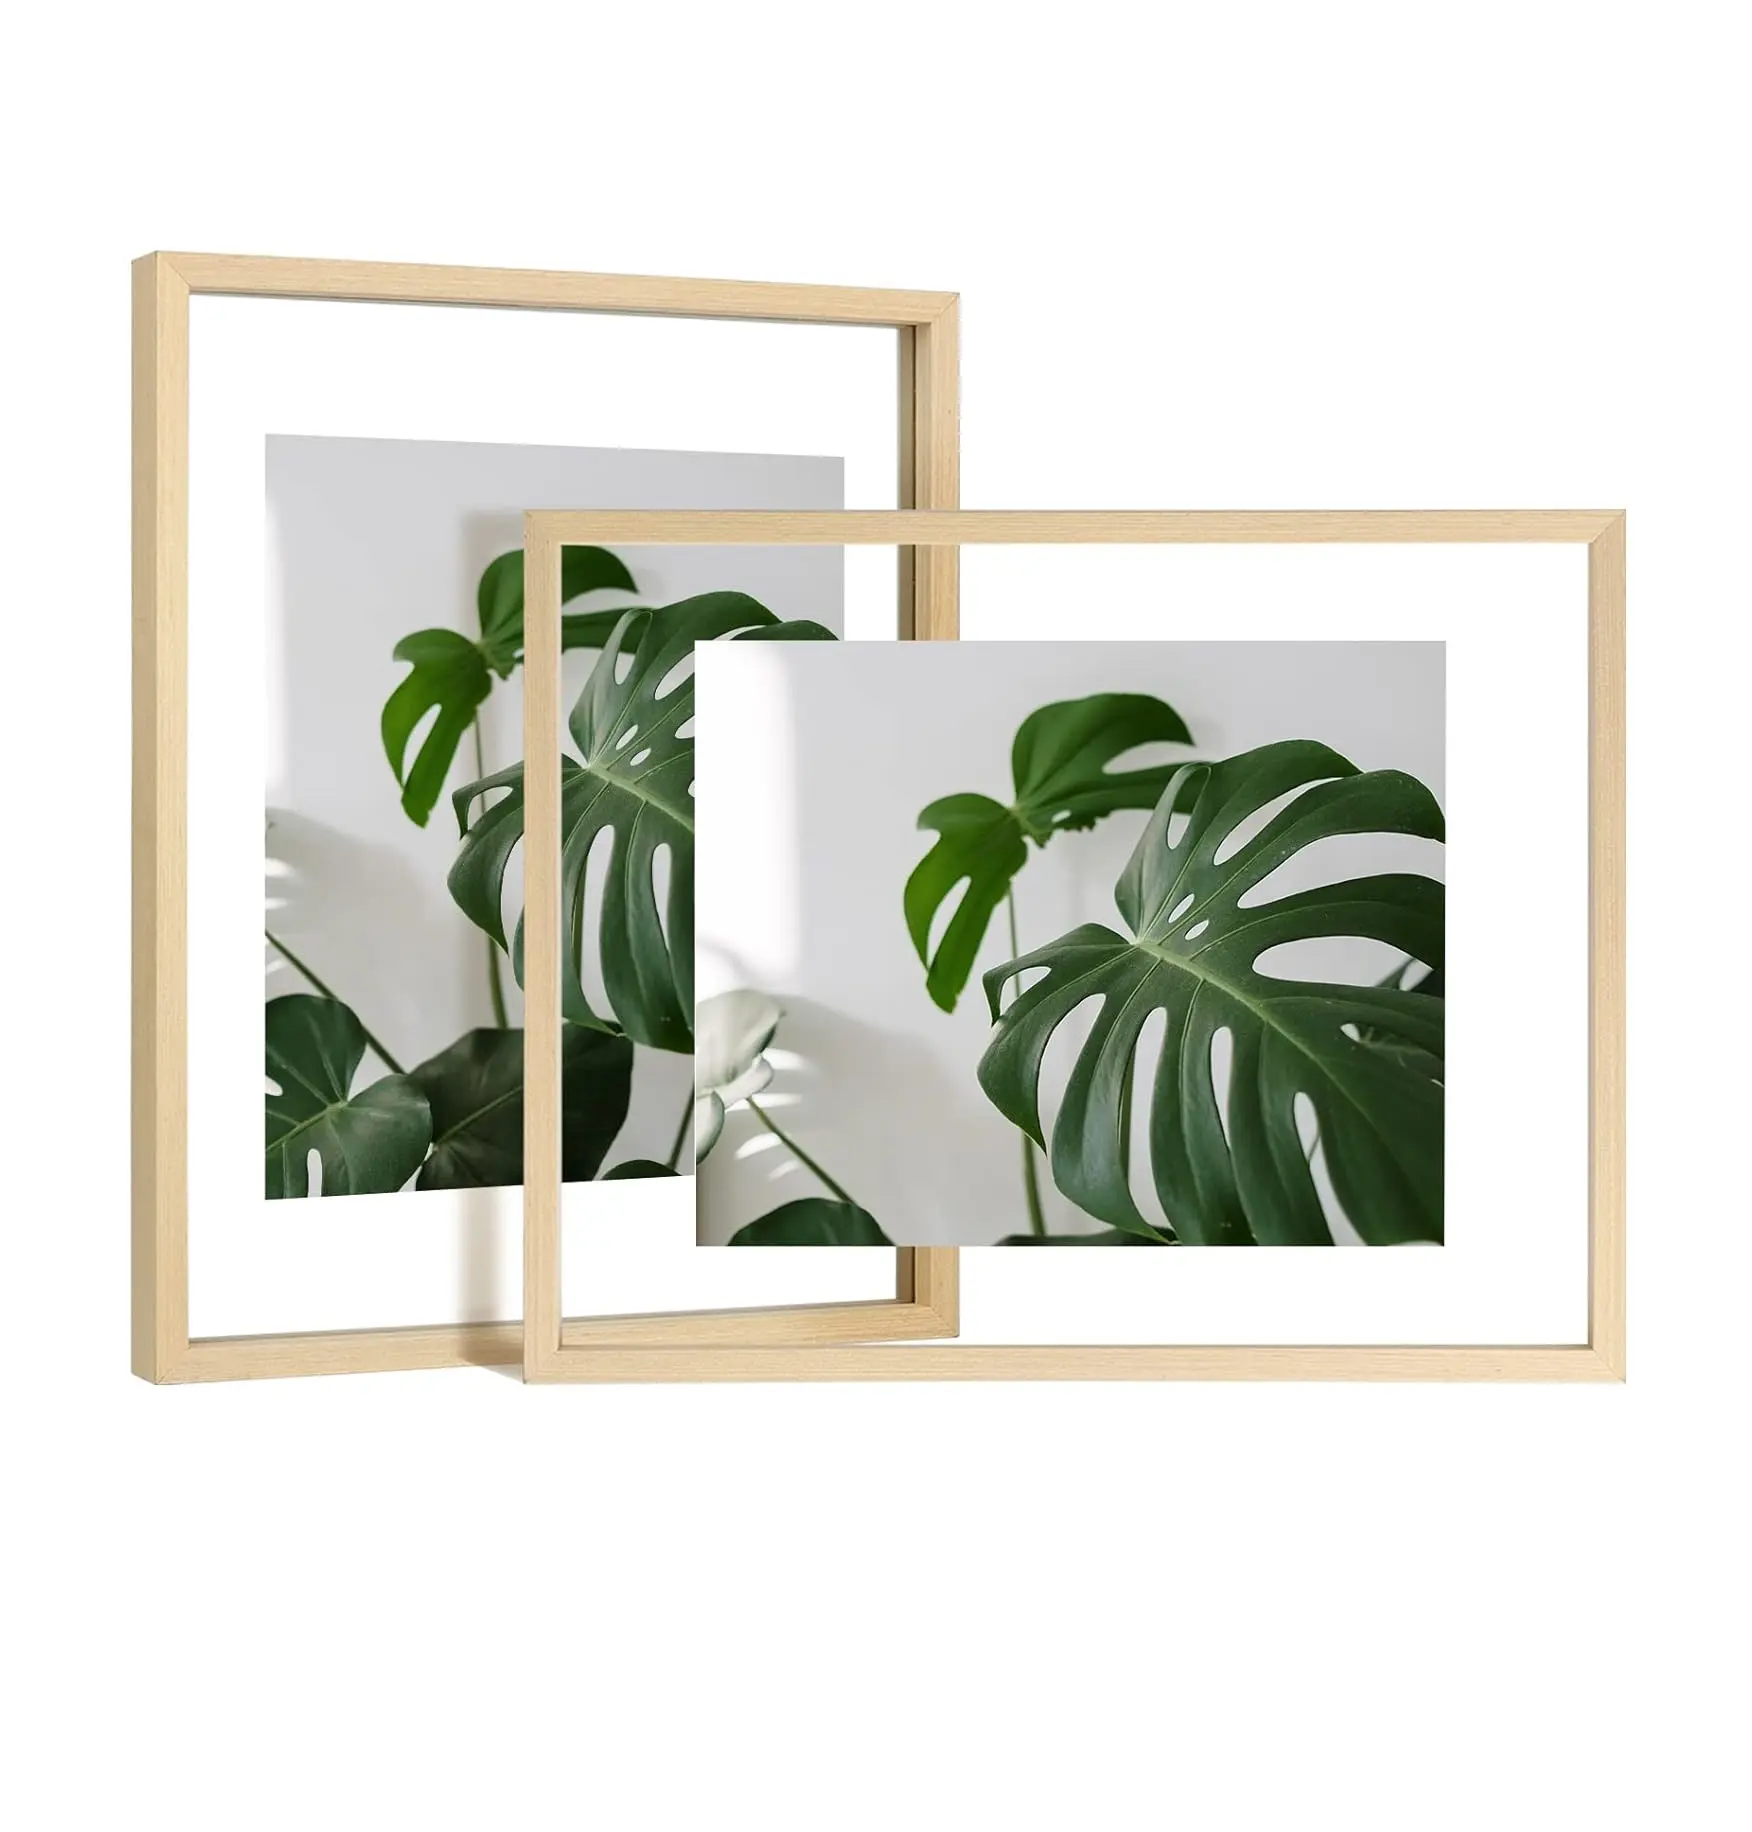 11x14 Set bingkai mengambang 2 bingkai foto kaca ganda terbuat dari tampilan kayu Solid ukuran apa pun foto hingga 11x14 pemasangan dinding